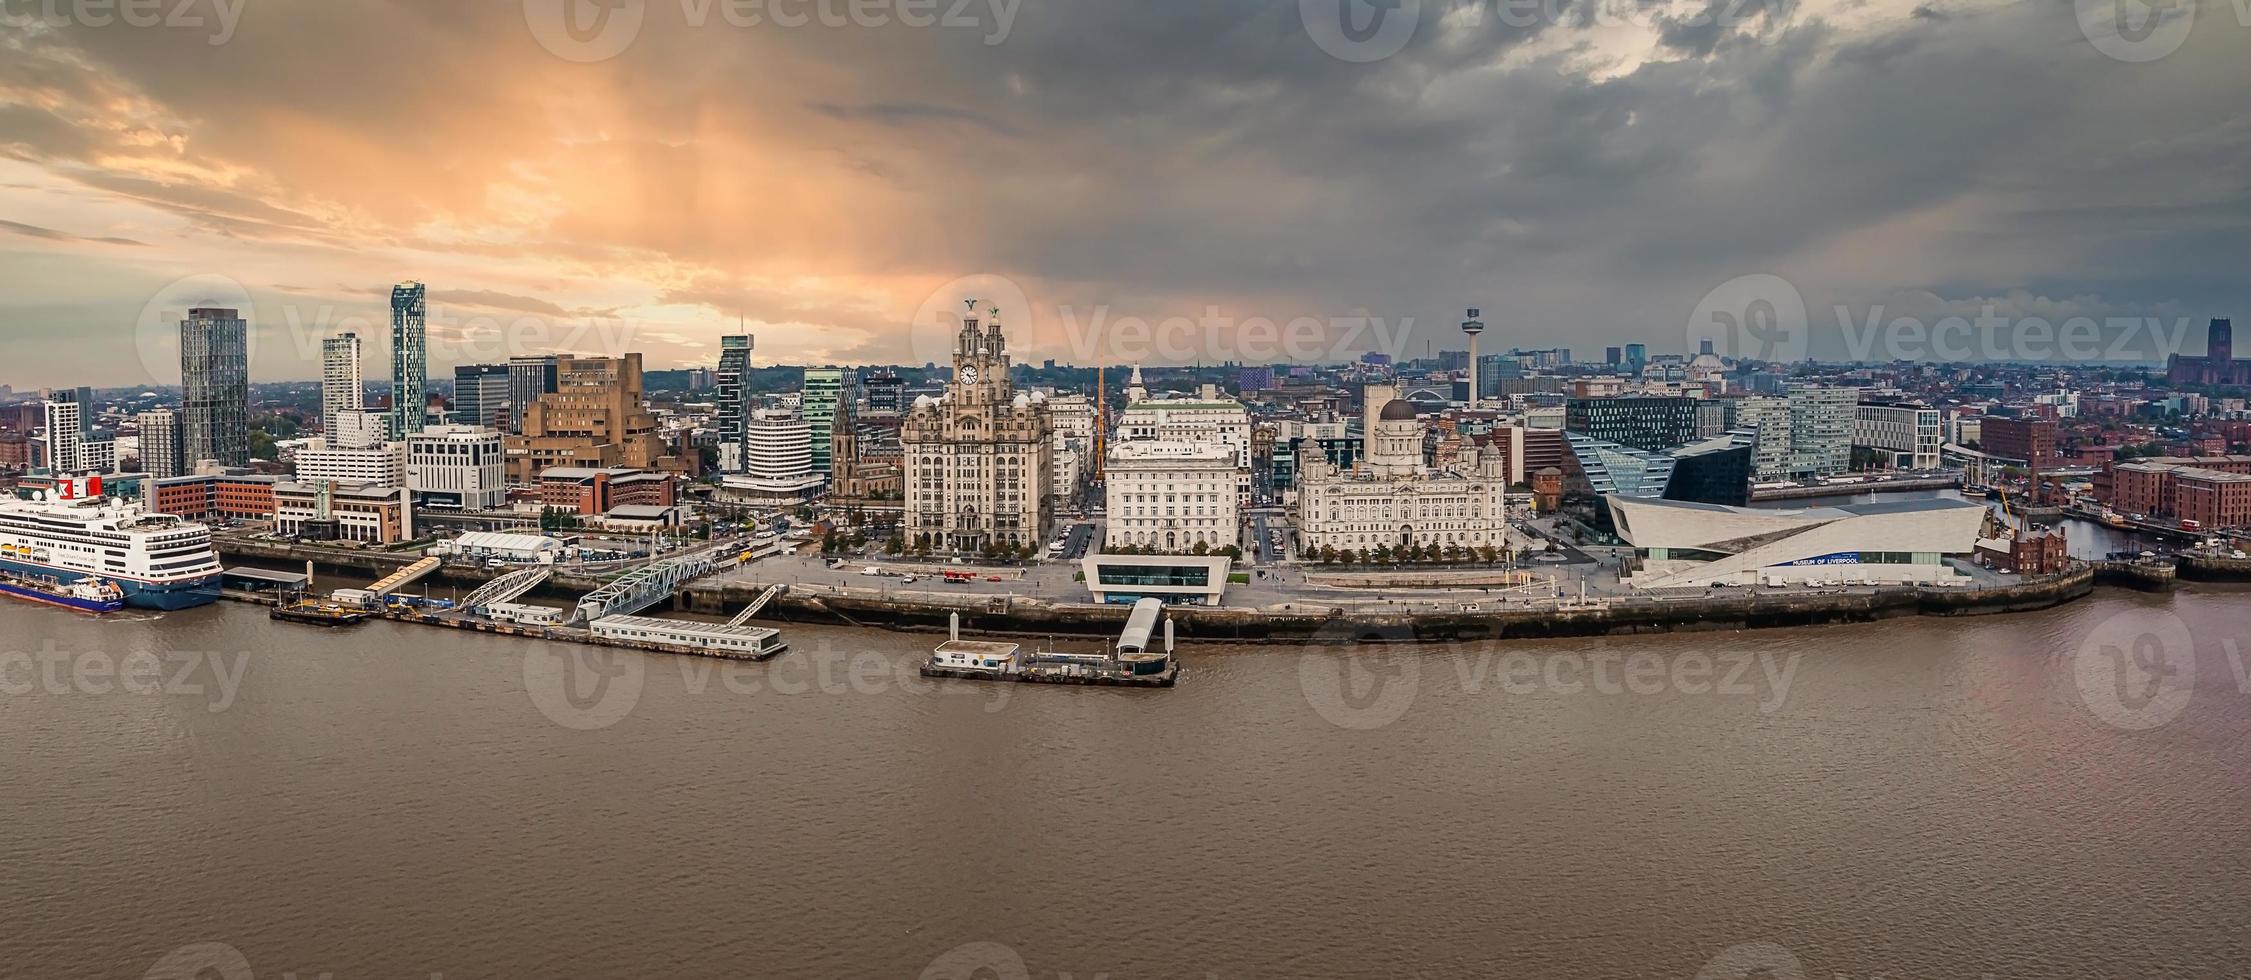 belle vue panoramique aérienne sur les toits de la ville de Liverpool photo